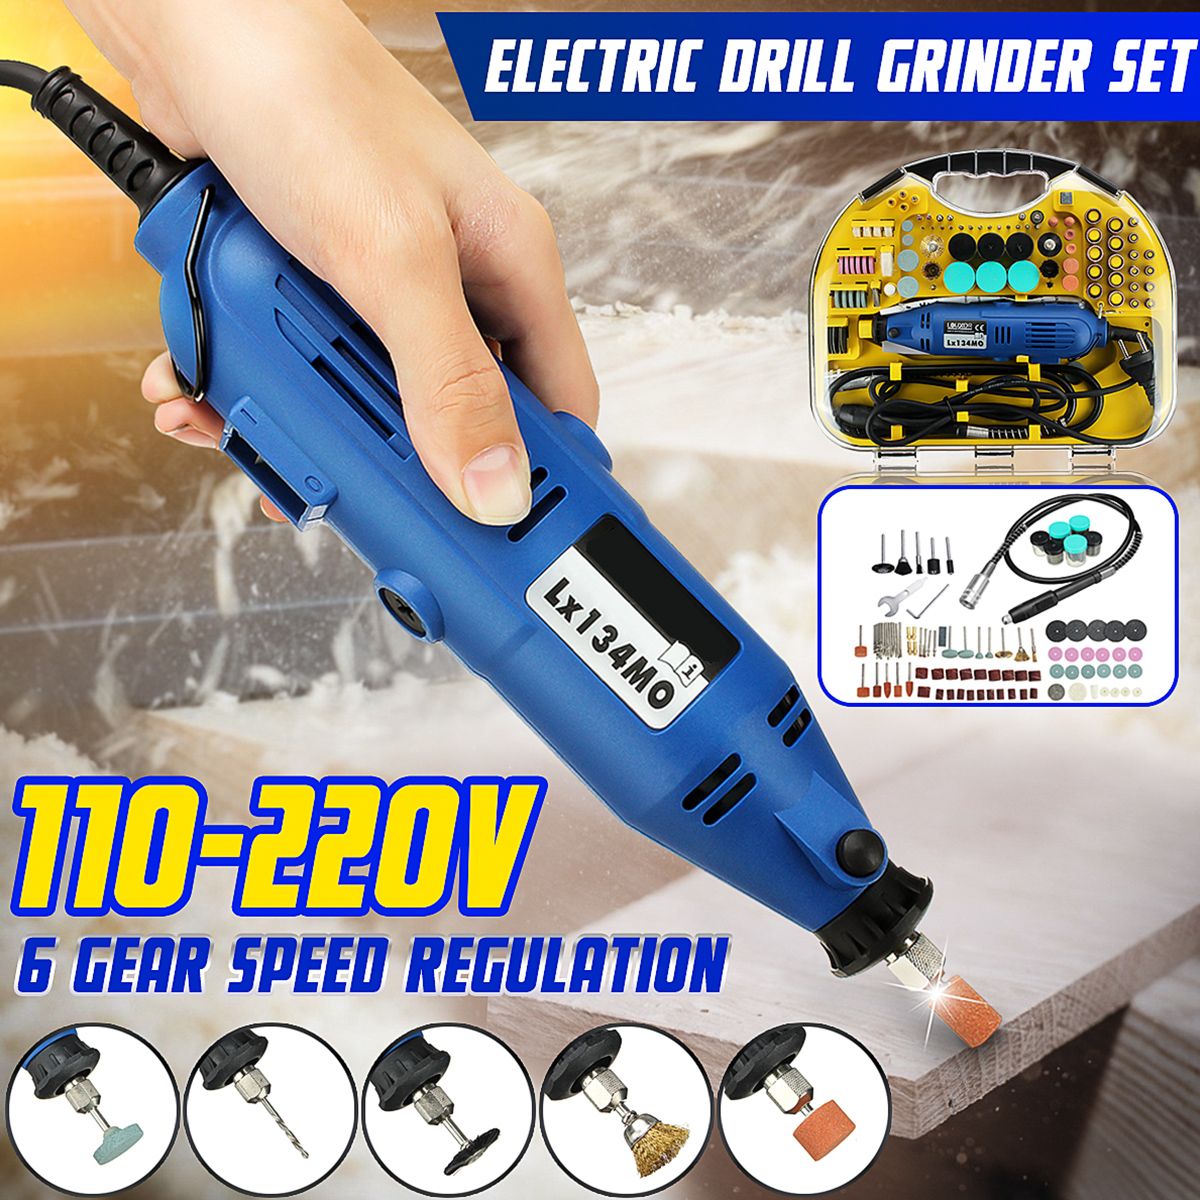 Professional-Multi-function-Electric-Grinder-Grinding-Set-110-220V-For-Milling-Polishing-1598924